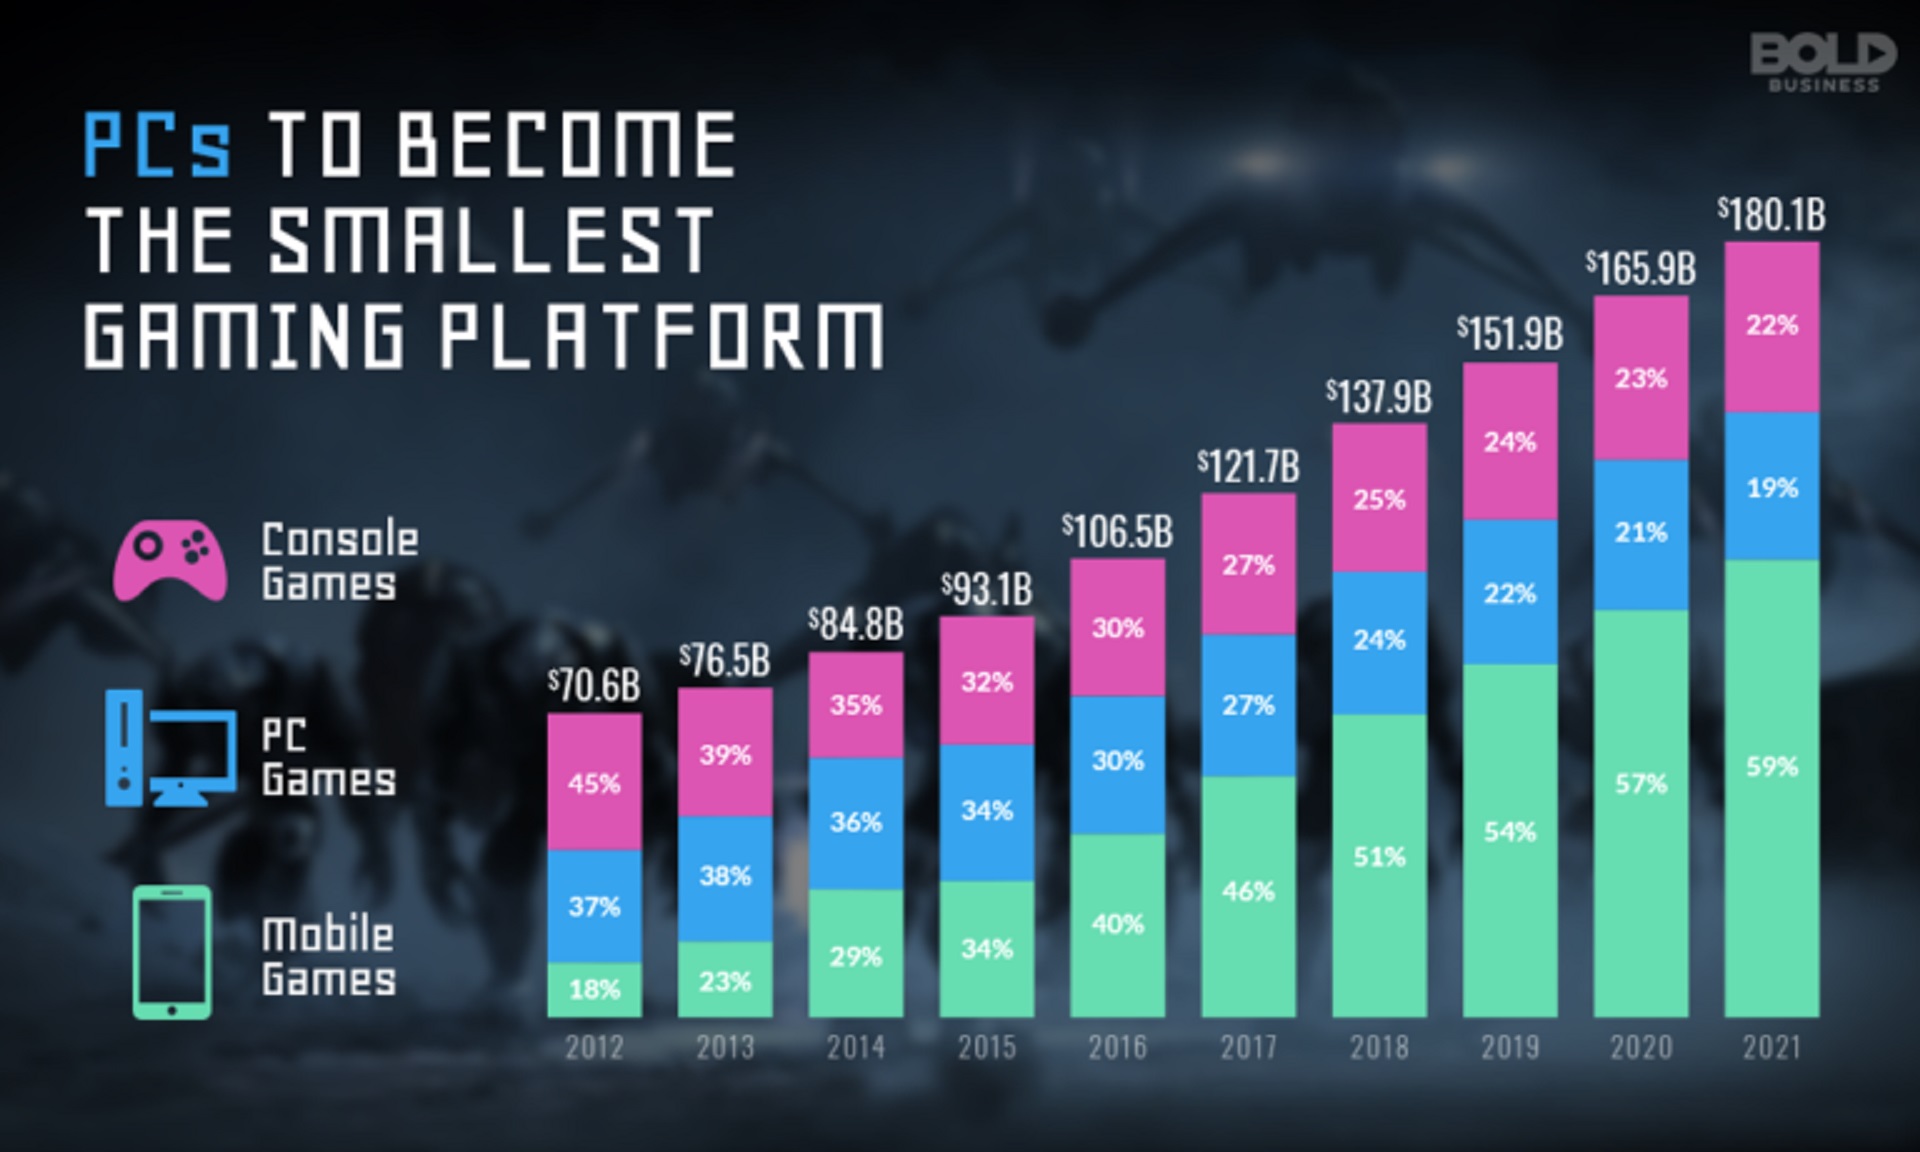 Oyun endüstrisindeki platformların pazar payı tablosu